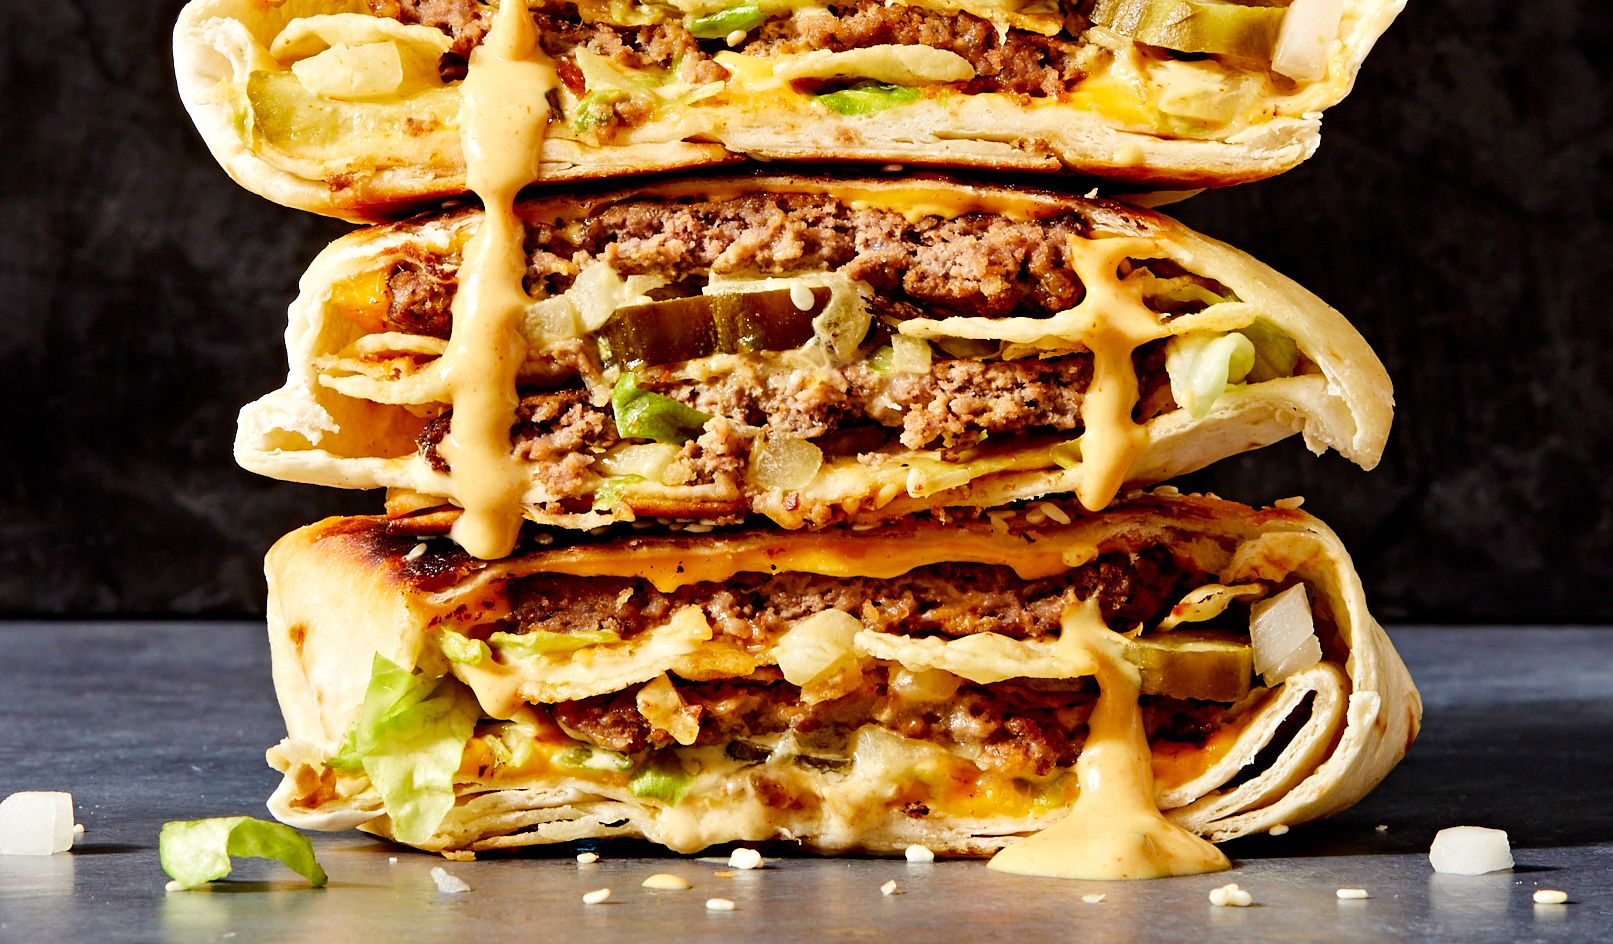 Best Big Mac Crunchwrap Recipe - How To Make A Big Mac Crunchwrap